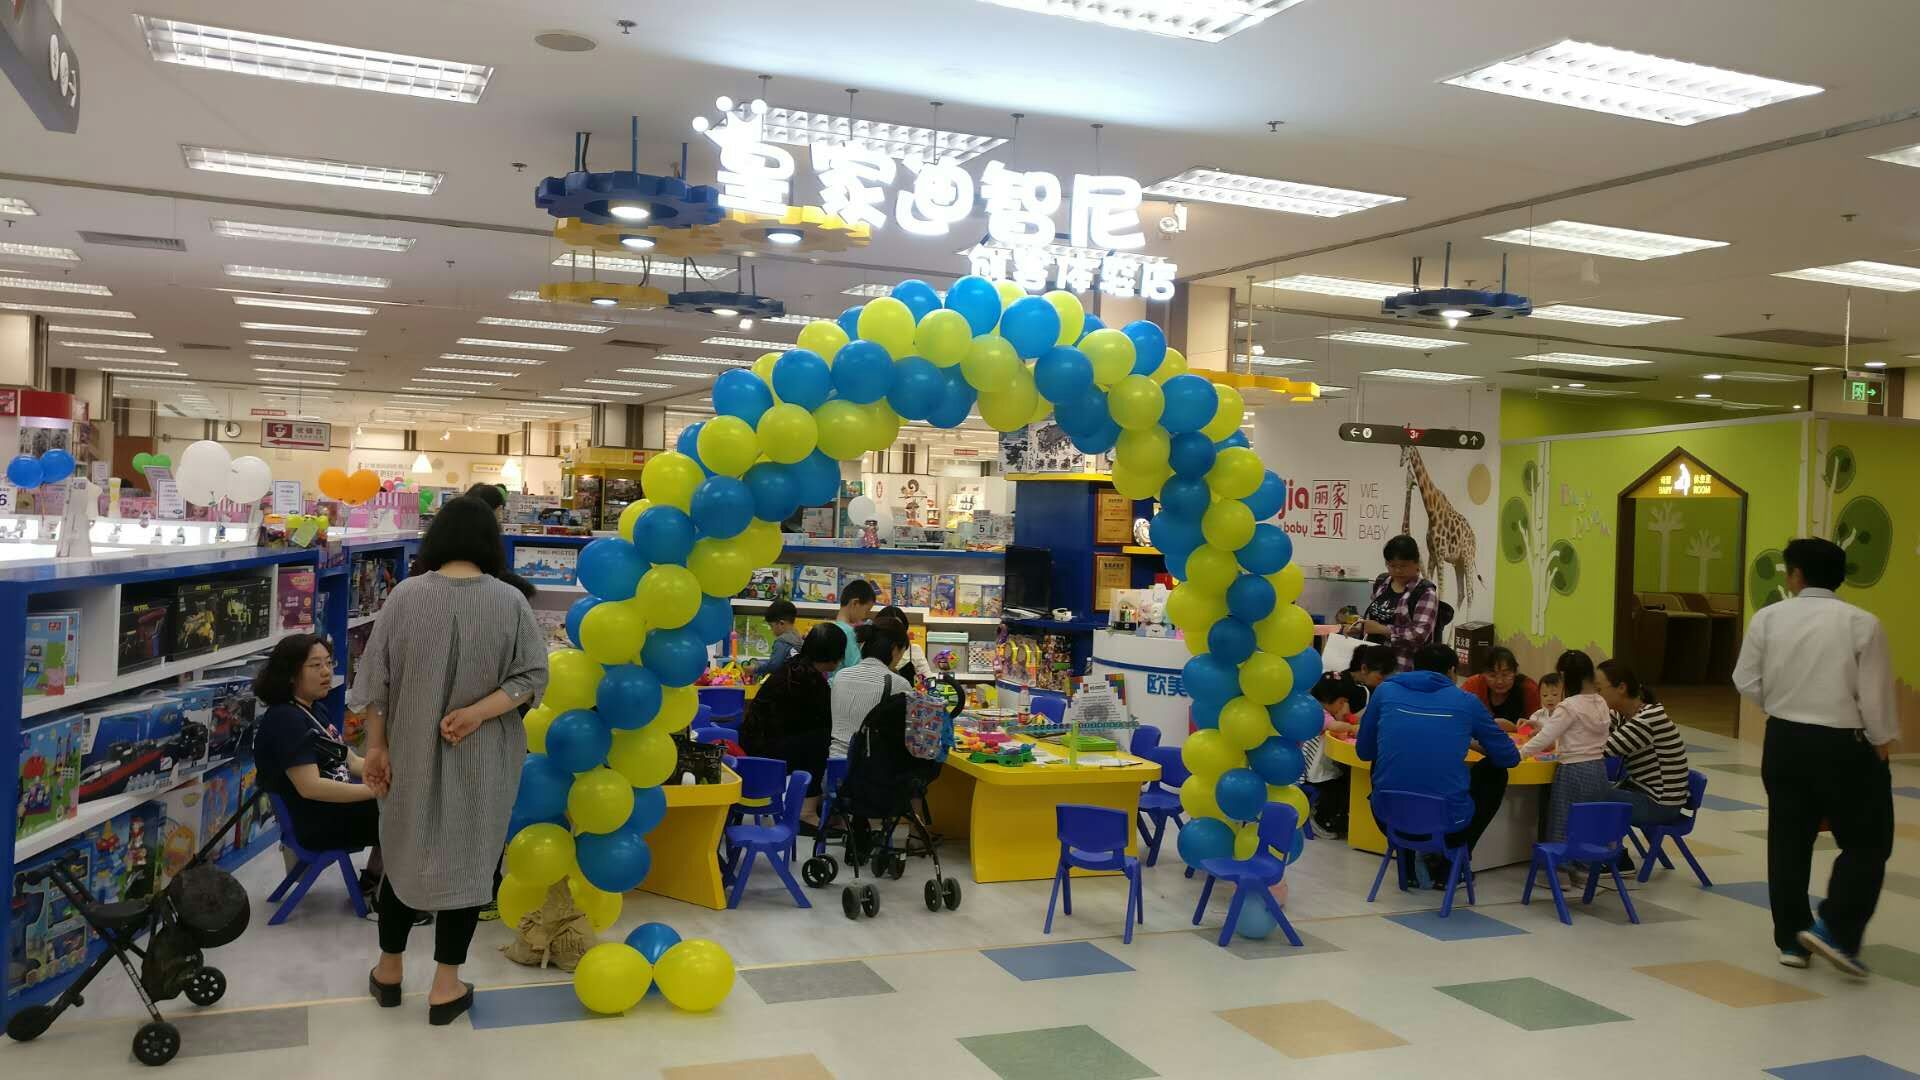 恭喜北京华堂皇家迪智尼益智玩具加盟店盛大开业啦